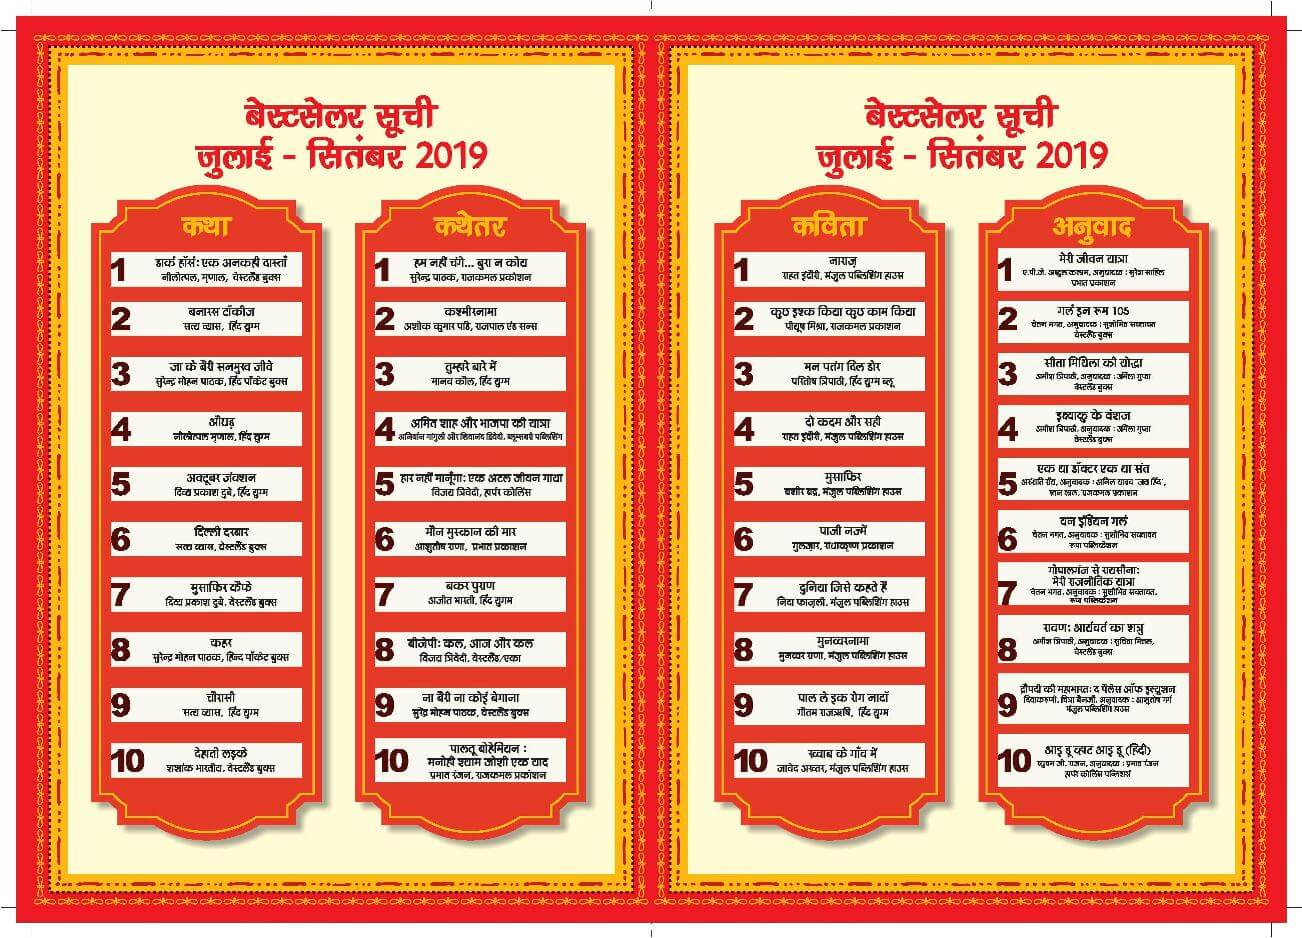 hindi-best-seller-list-of-july-september-2019-announced